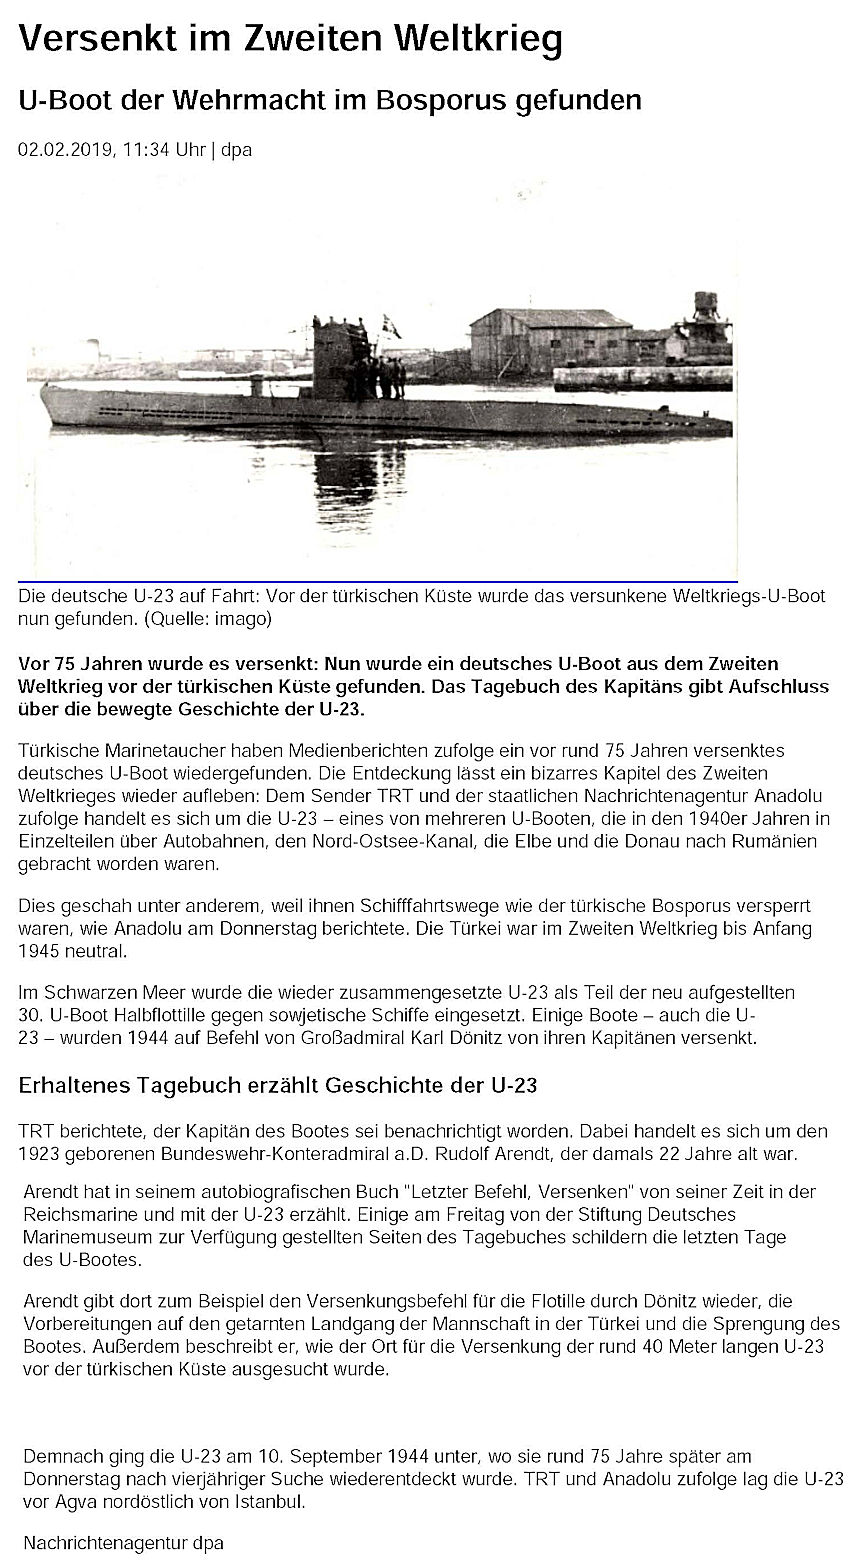 U-Boot U-23 im Bosporus gefunden